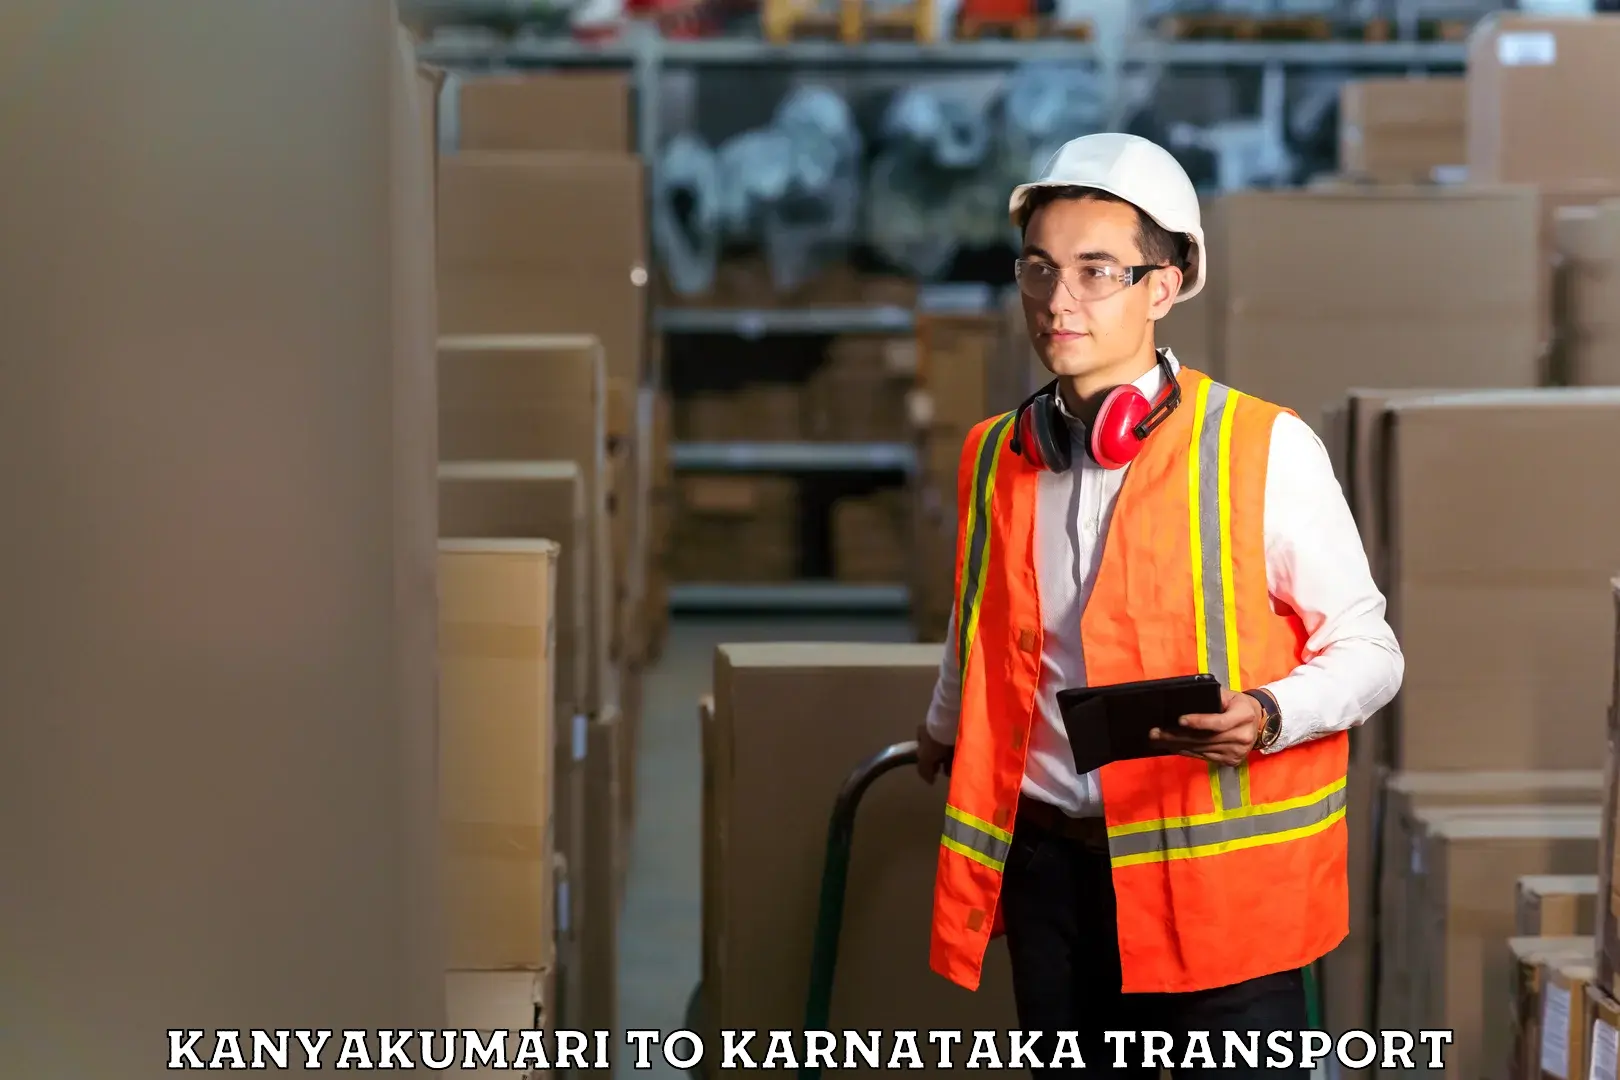 Container transport service Kanyakumari to Anavatti